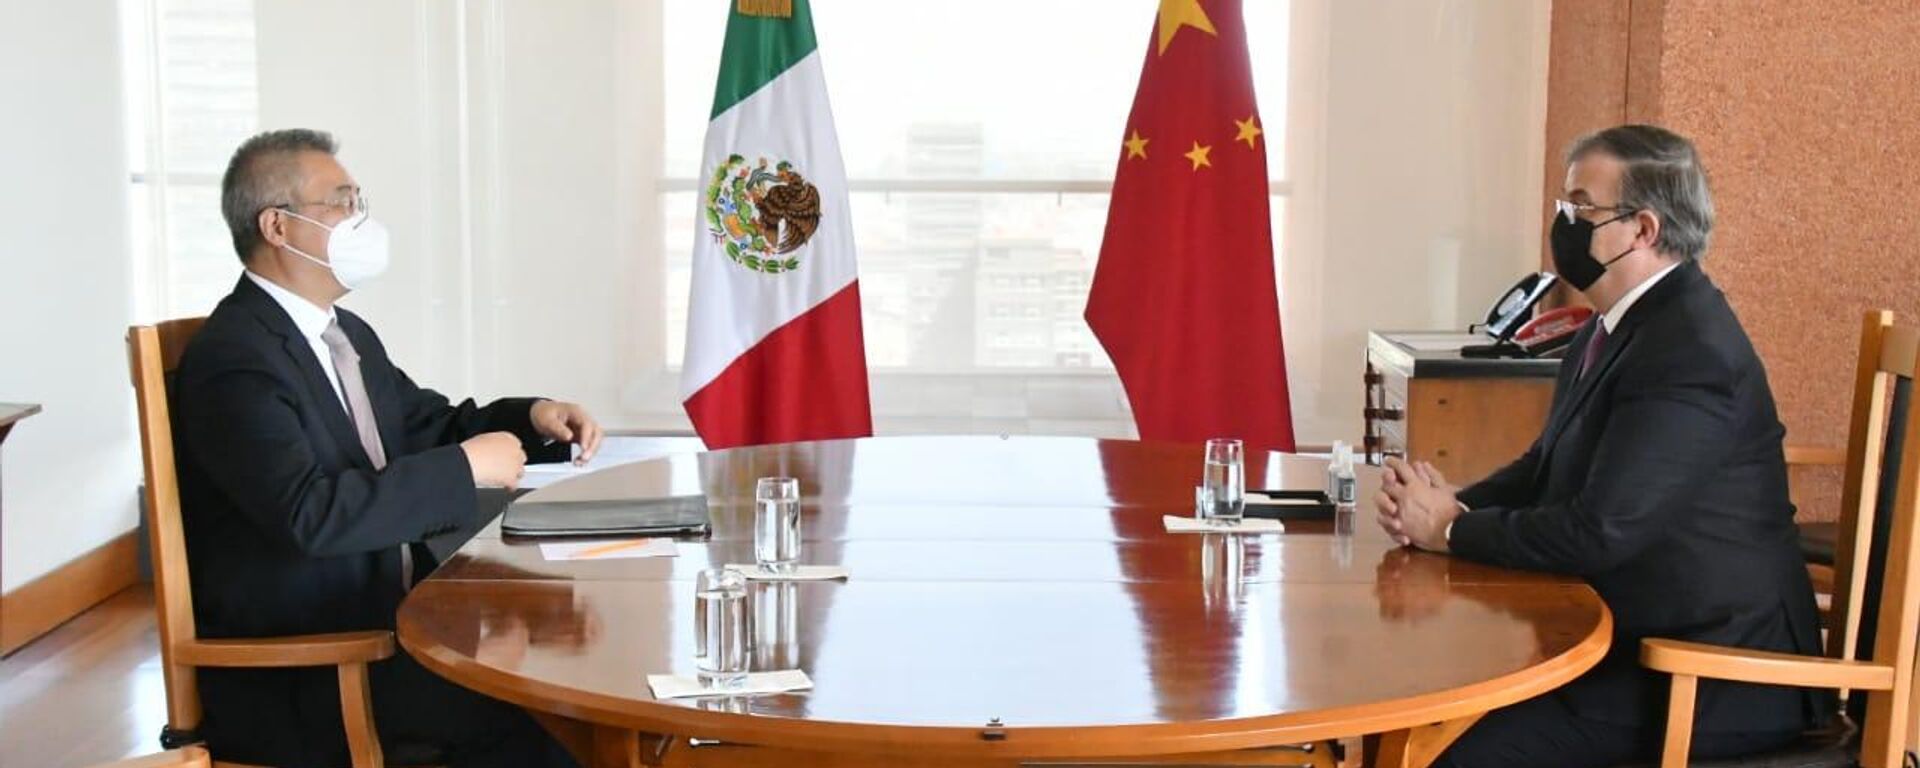 El canciller mexicano Marcelo Ebrard y el embajador chino Zhu Qingqiao - Sputnik Mundo, 1920, 13.06.2022